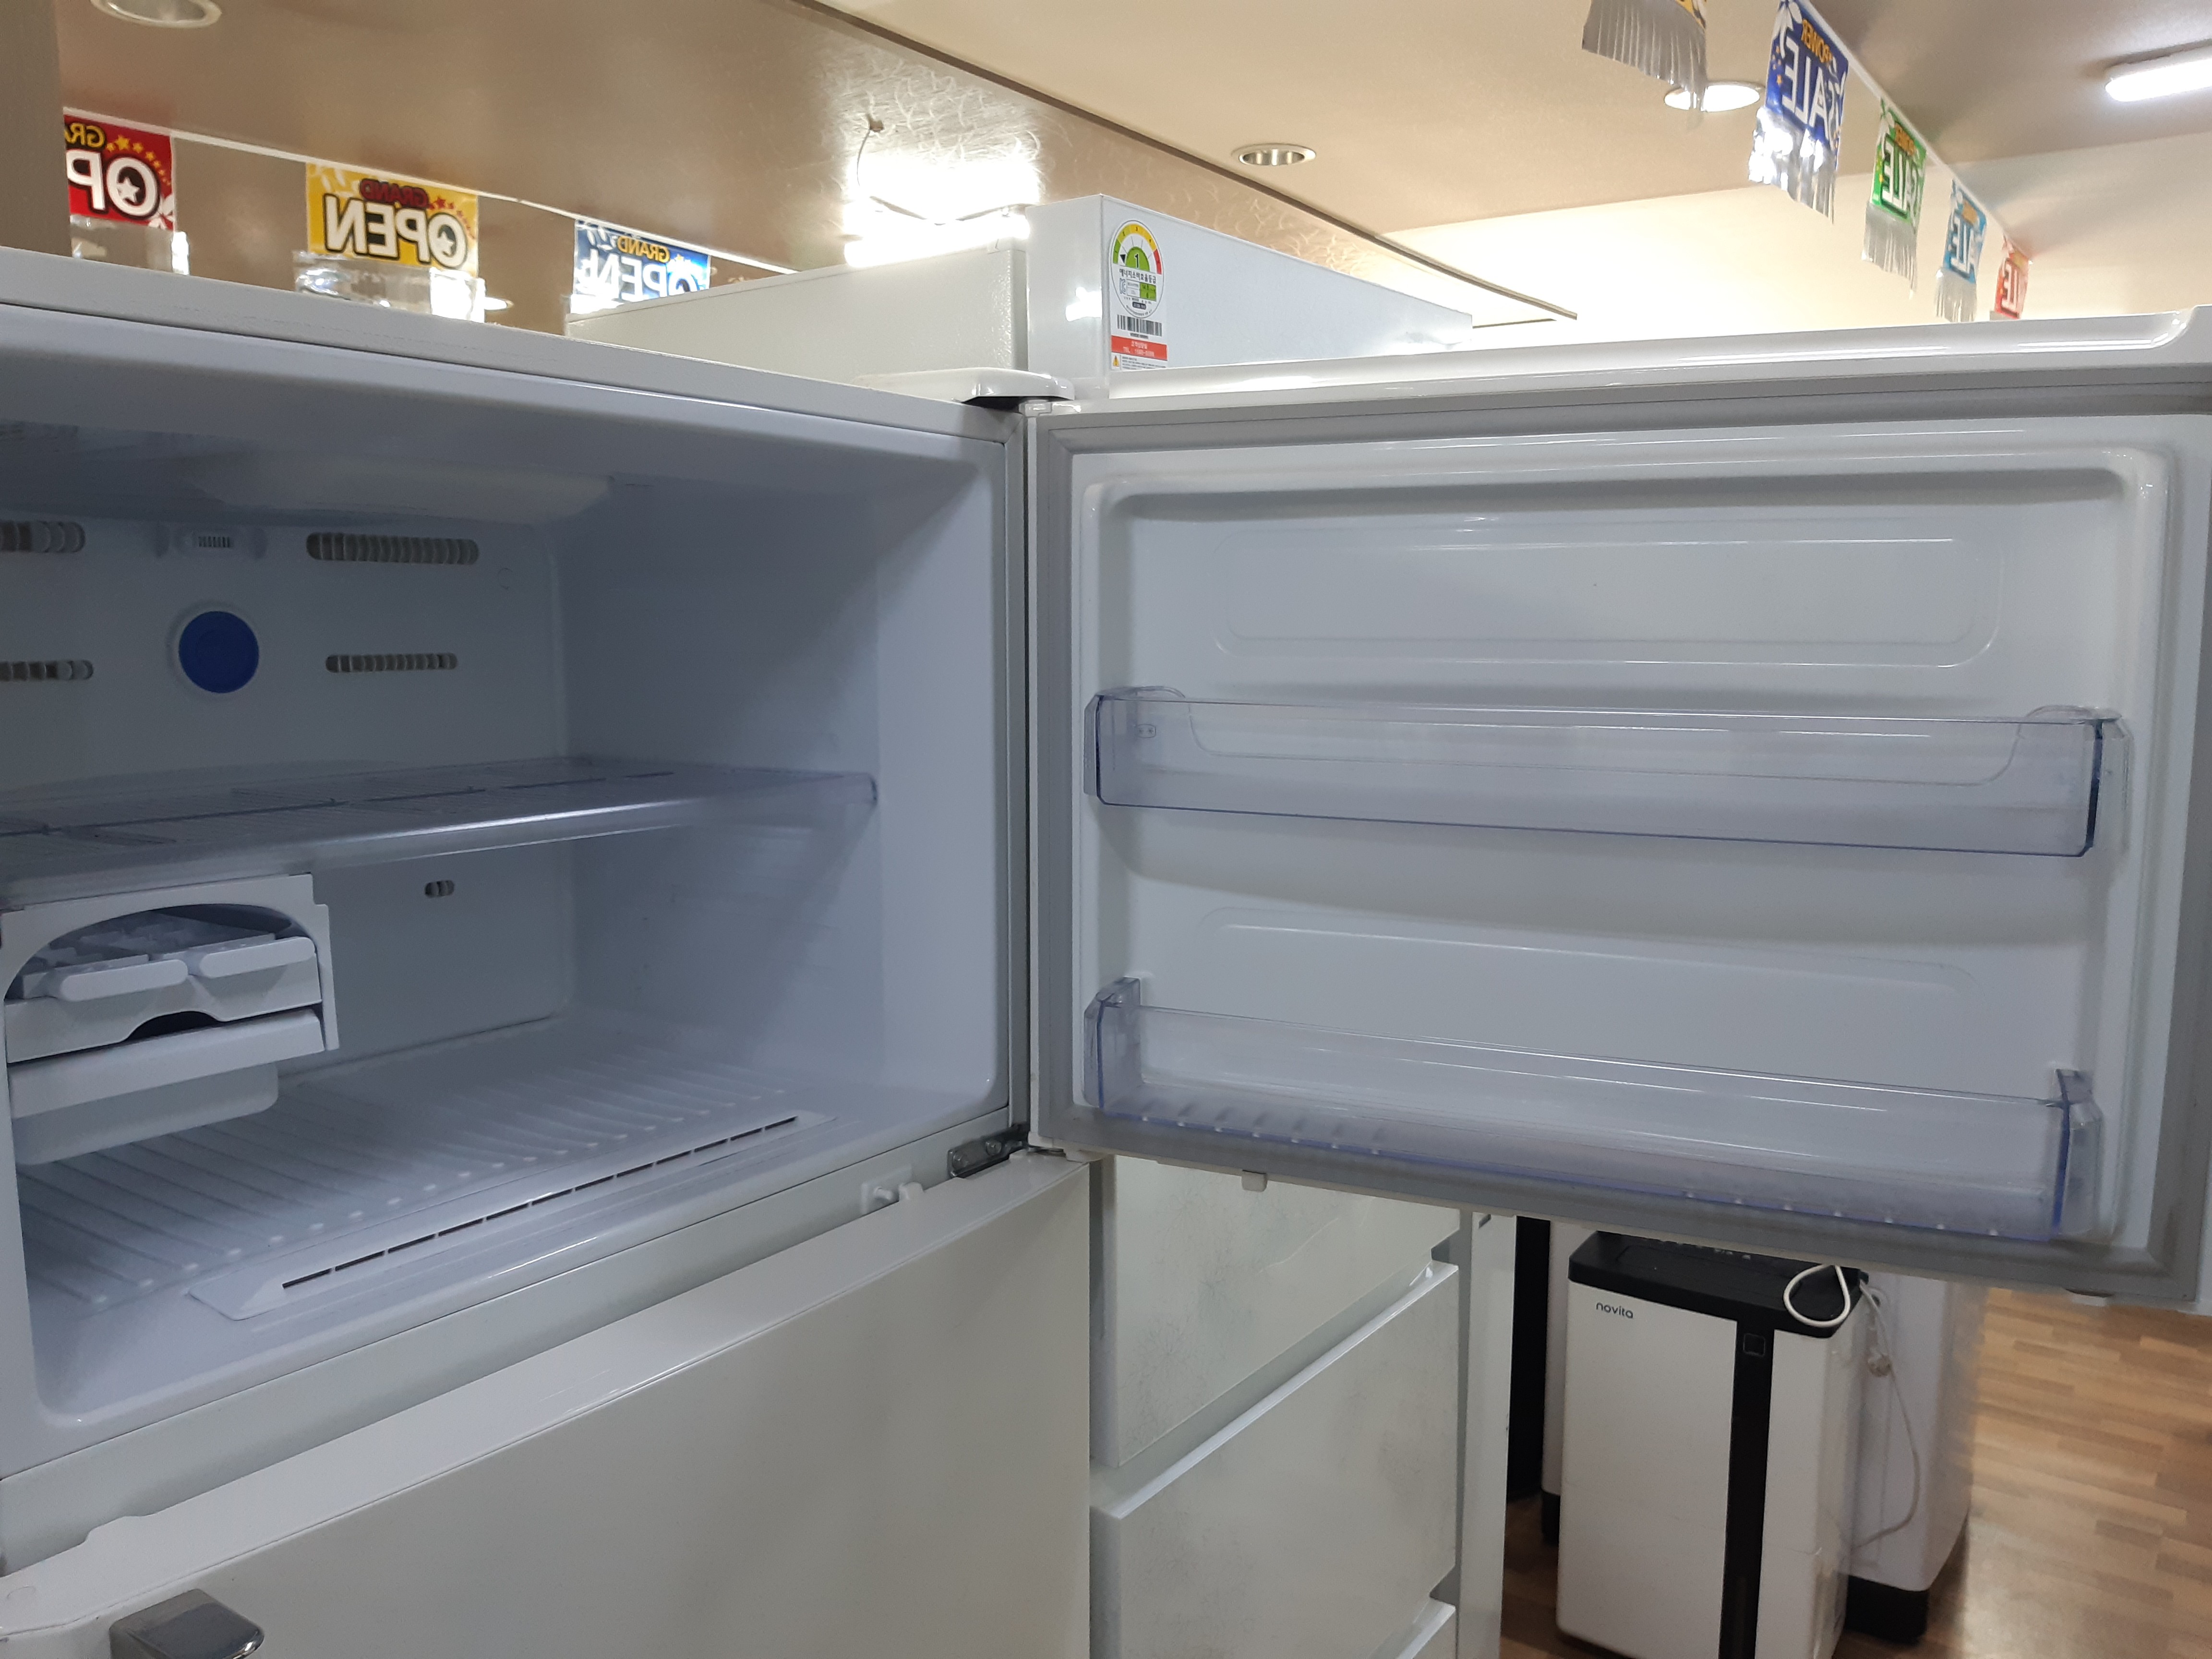 삼성 480L 냉장고